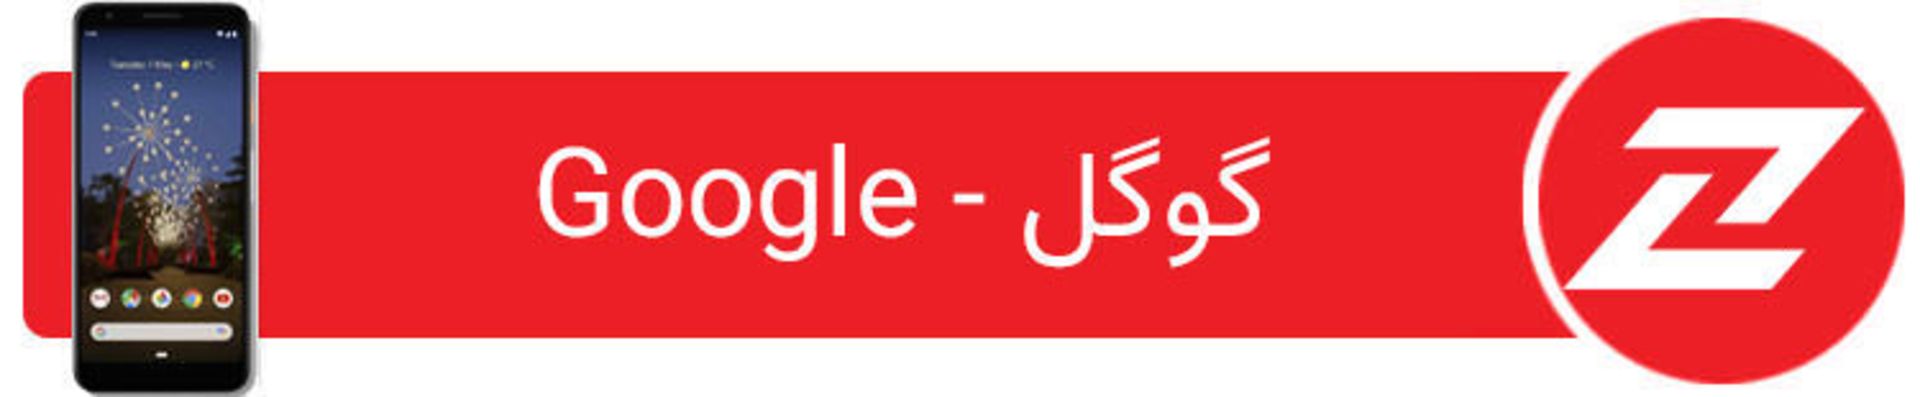 مرجع متخصصين ايران فهرست موبايل هاي هوشمند گوگل